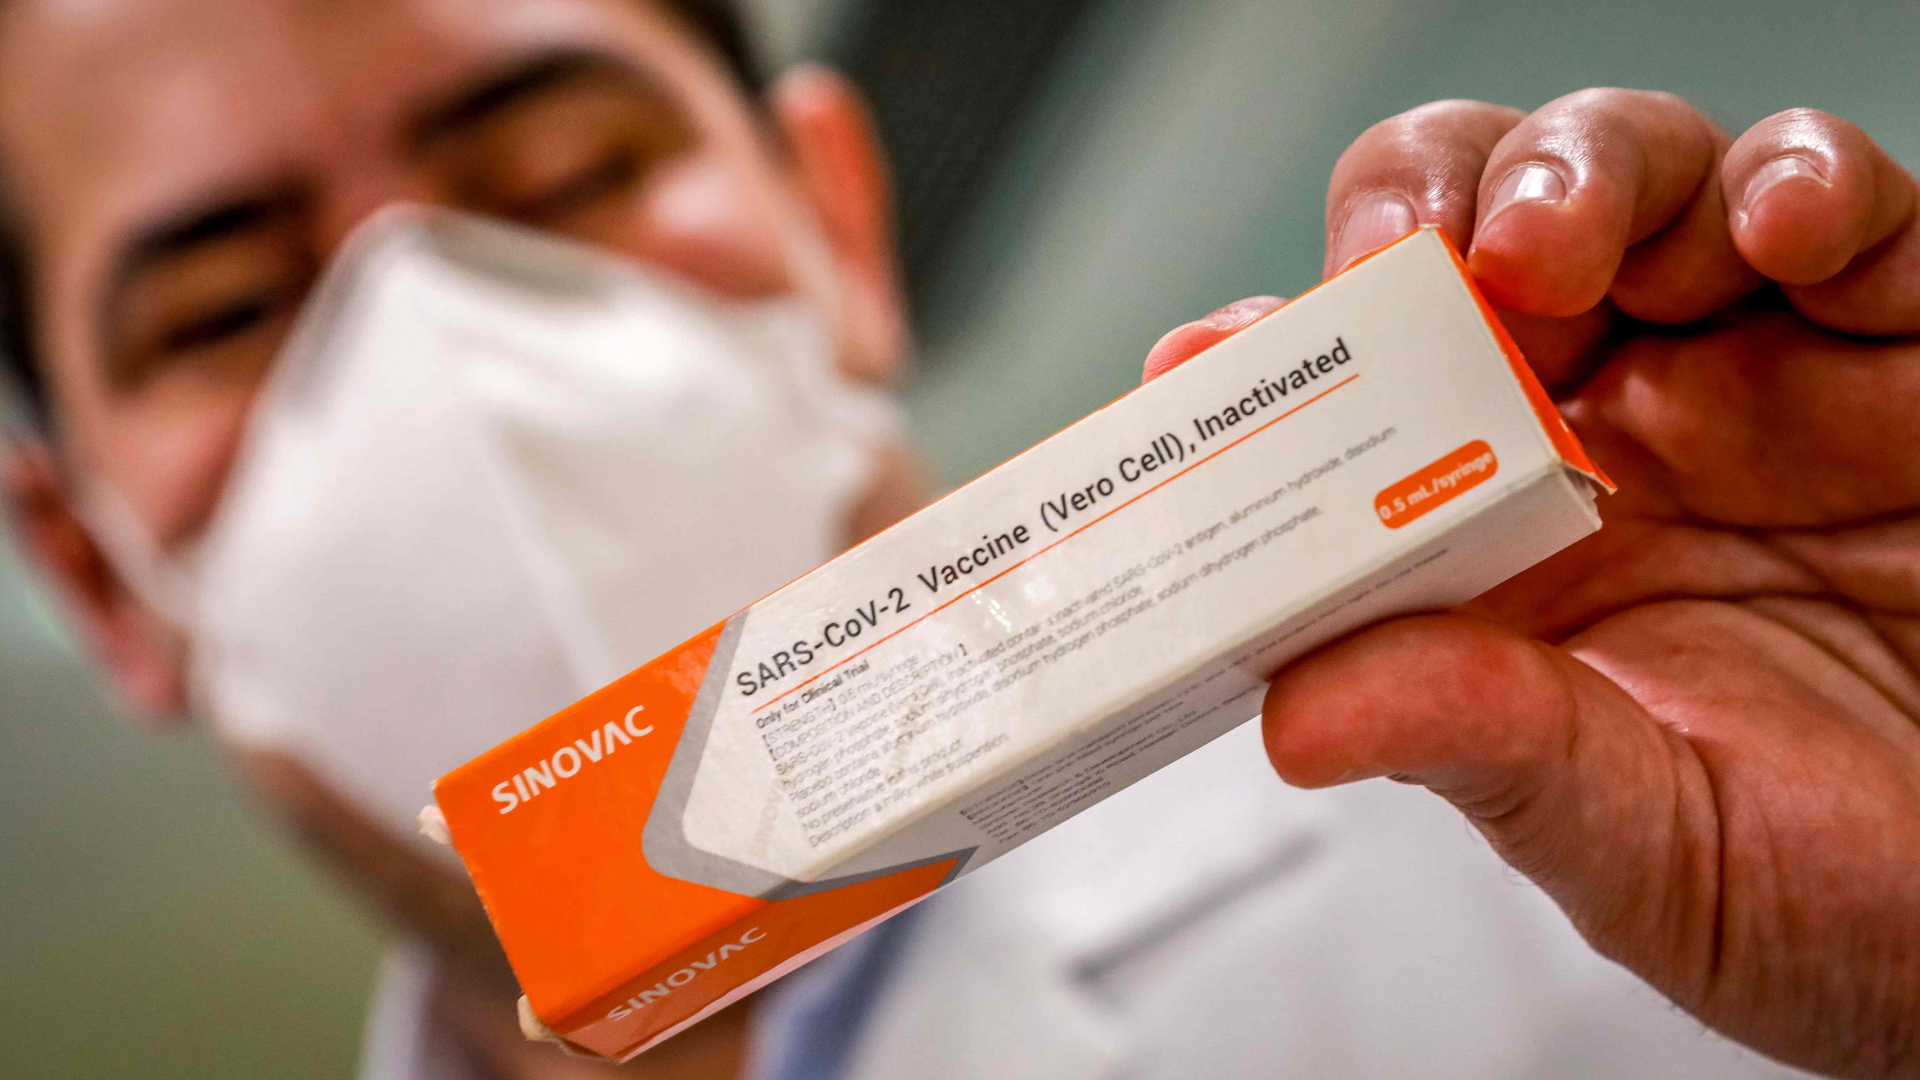 Ein Arzt hält eine Packung des chinesischen Sinovac-Impfstoffes gegen Sars-CoV-2 in der Hand. | Bildquelle: AFP